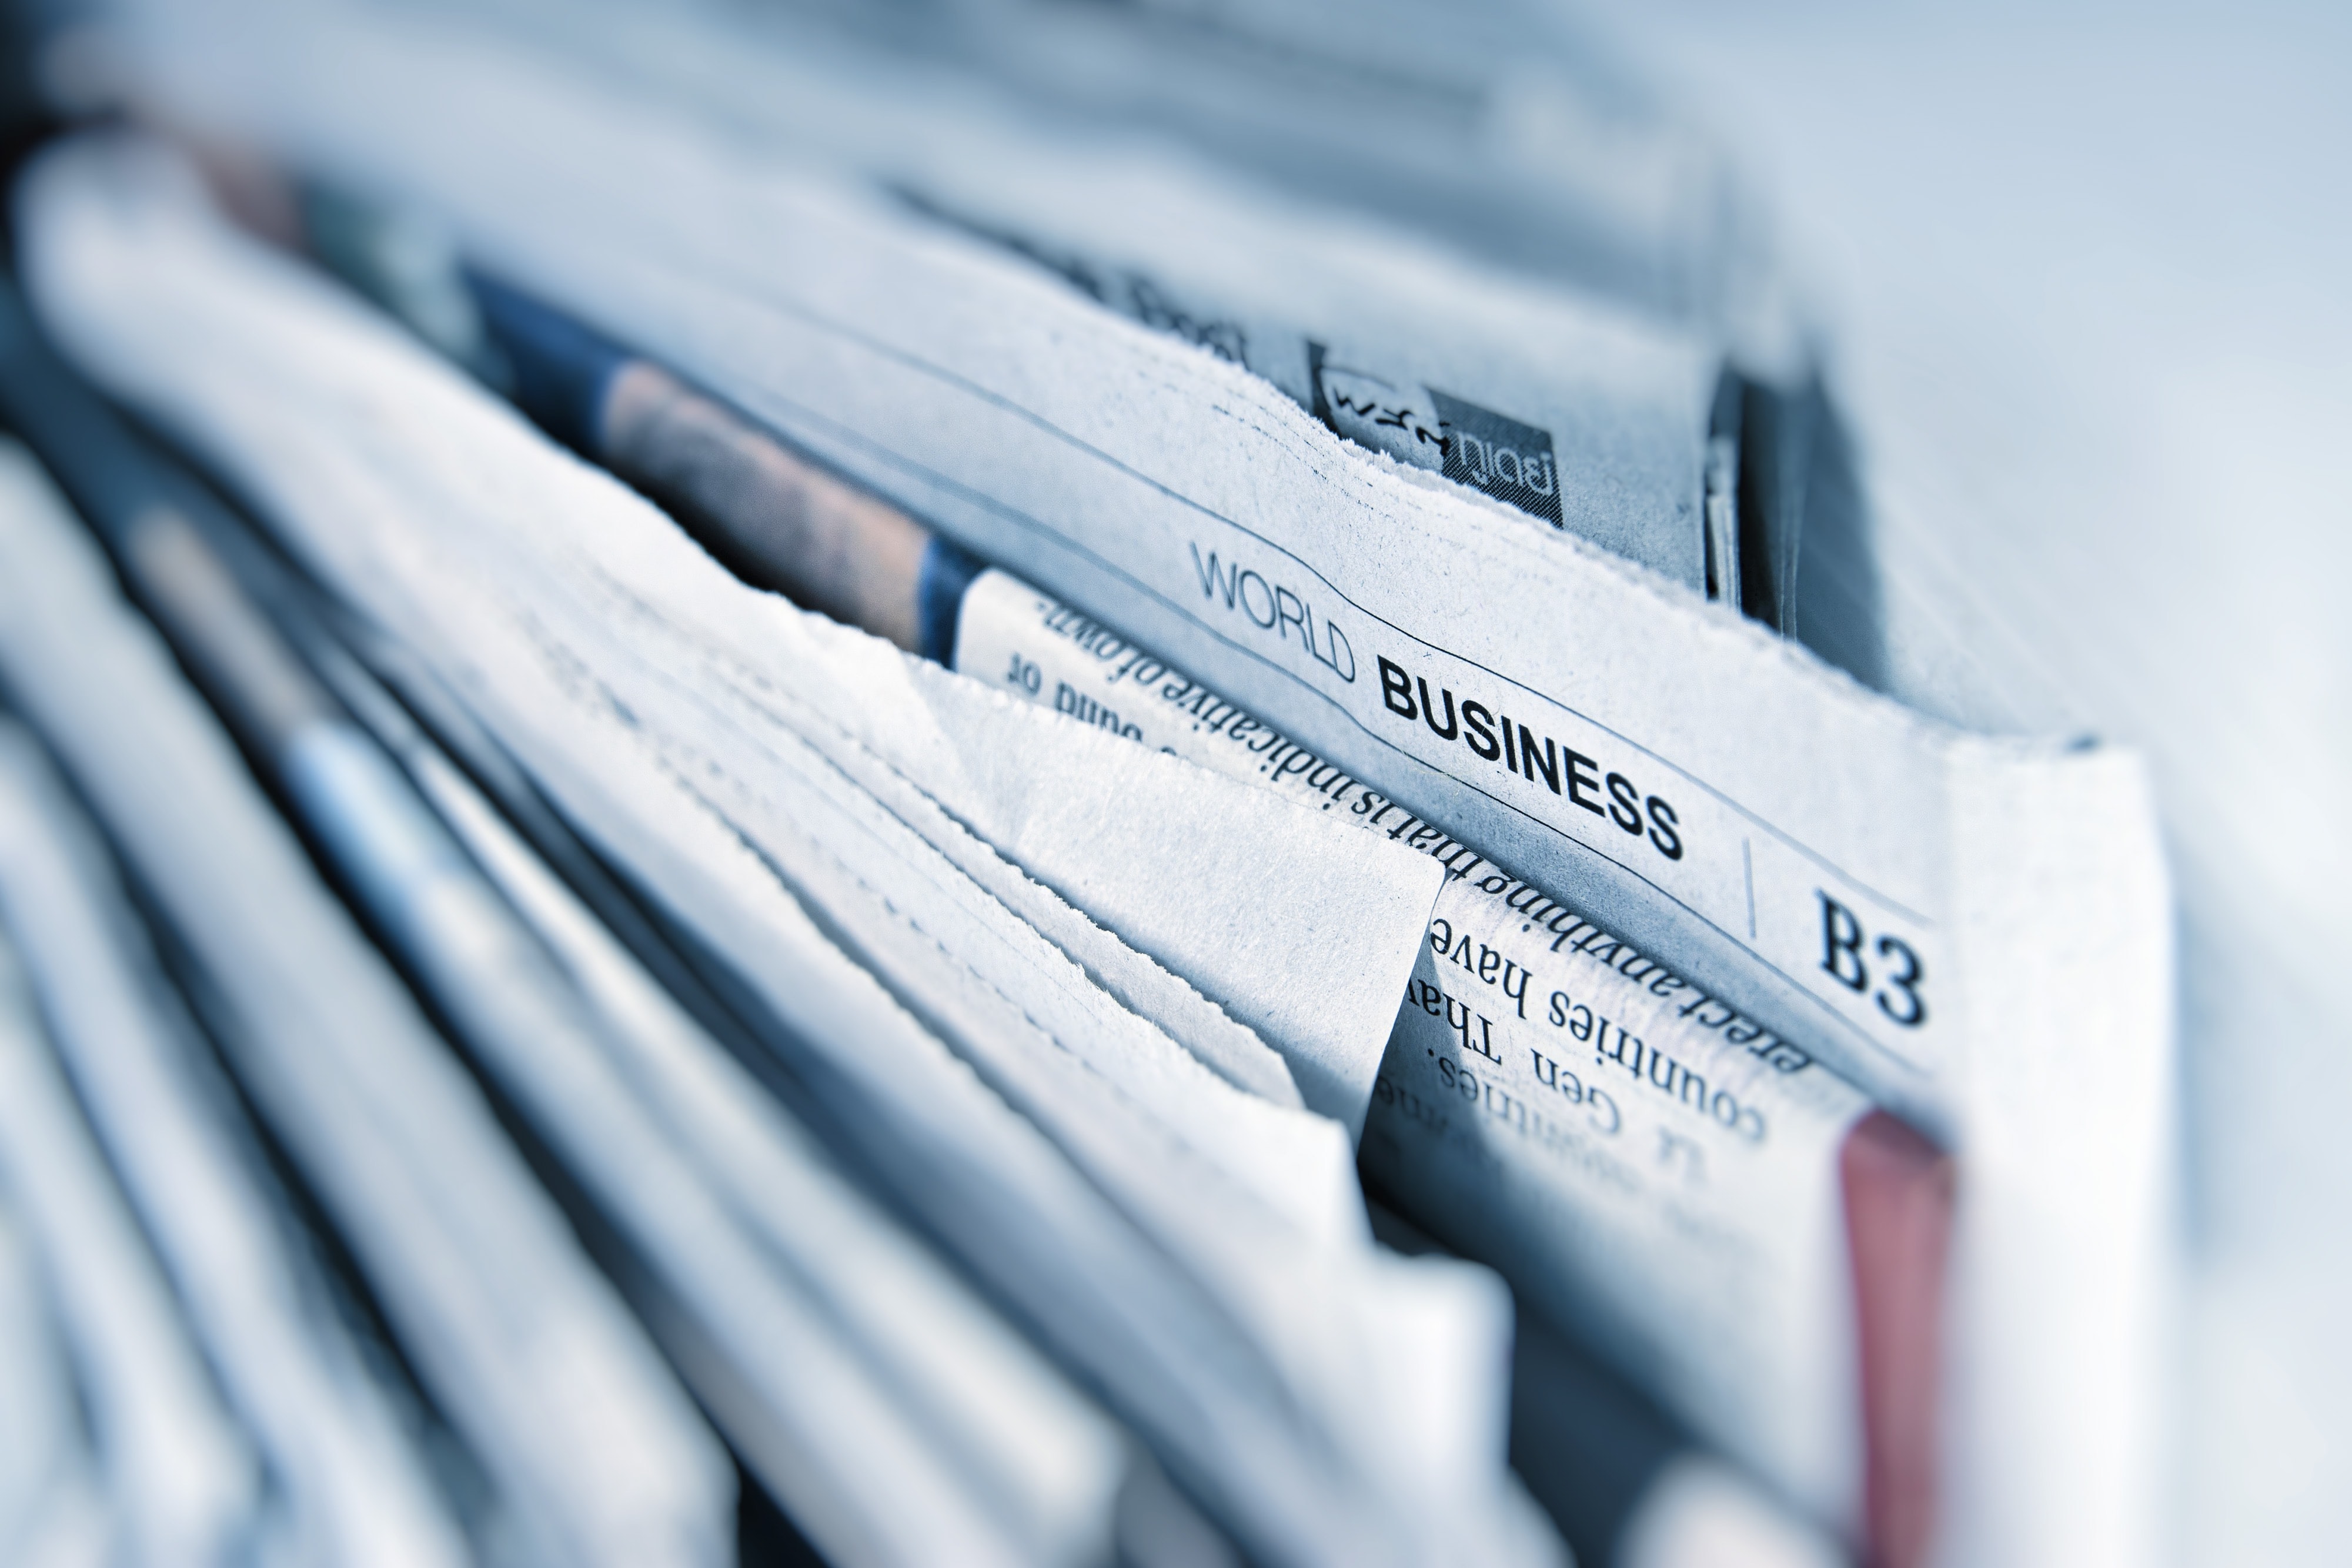 Newspaper sector: World business